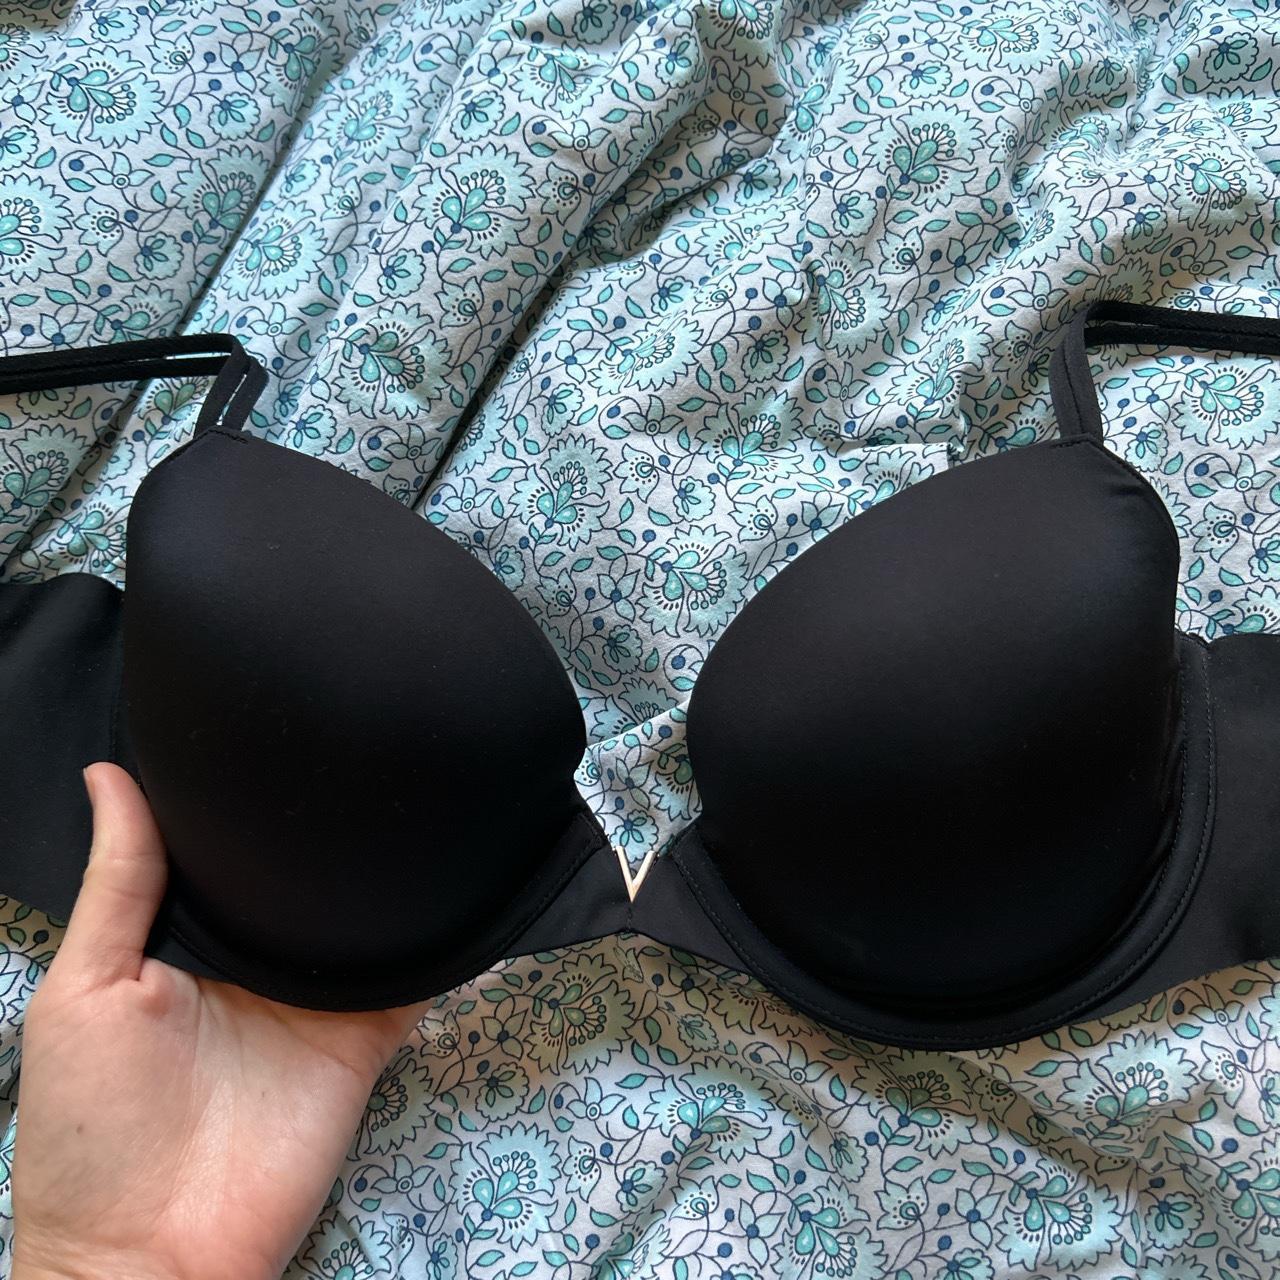 Victoria's Secret Black Lined No Wire bra size 32 DD